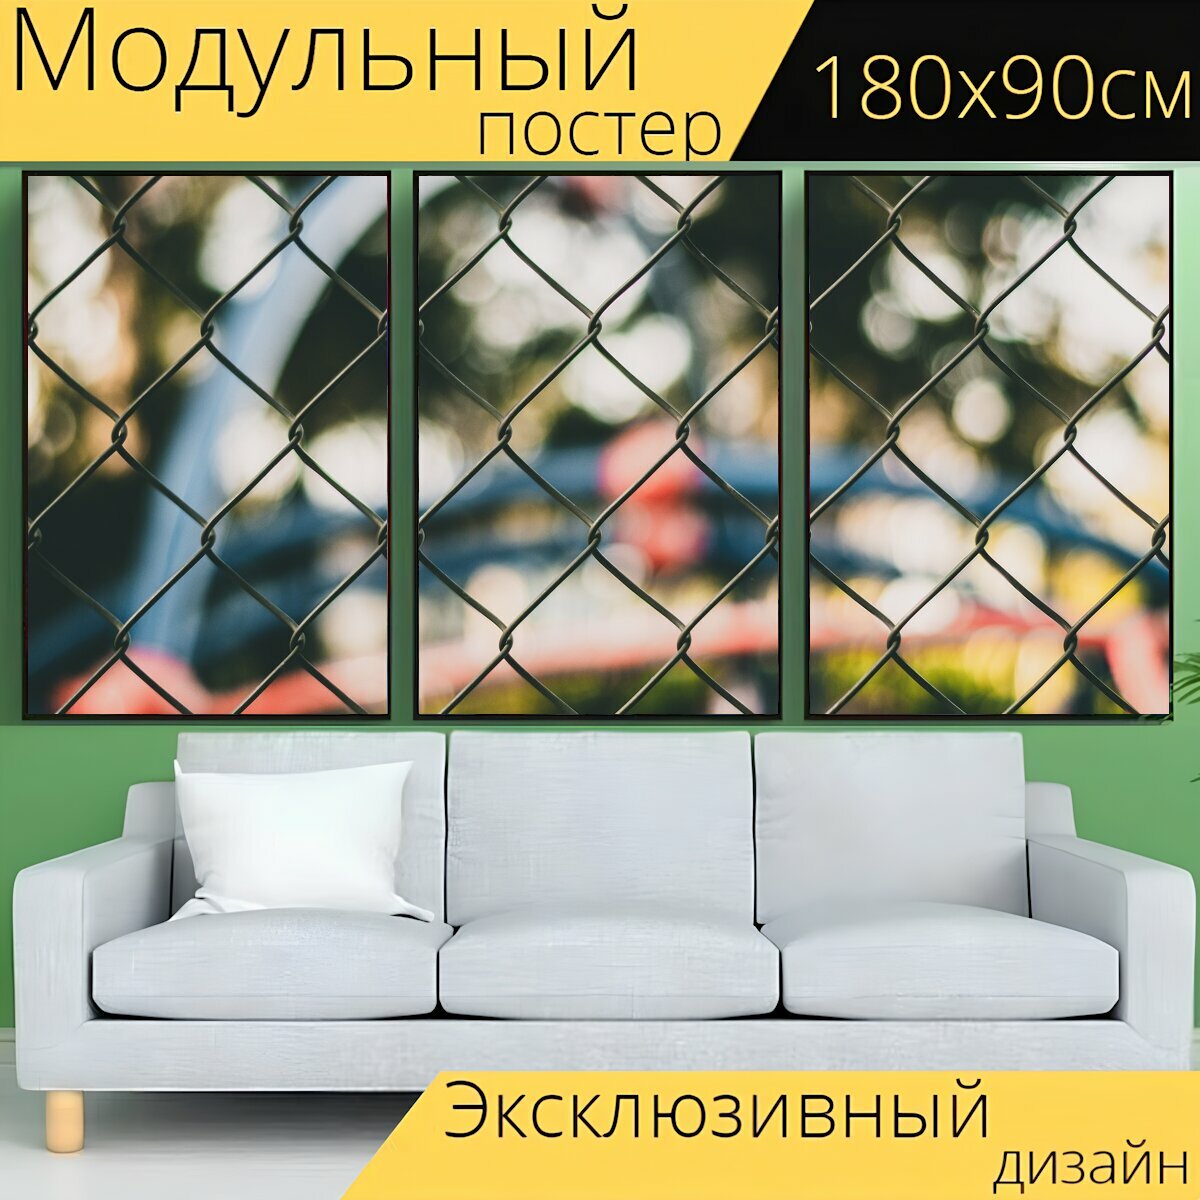 Модульный постер "Изгородь, на открытом воздухе, ворота" 180 x 90 см. для интерьера